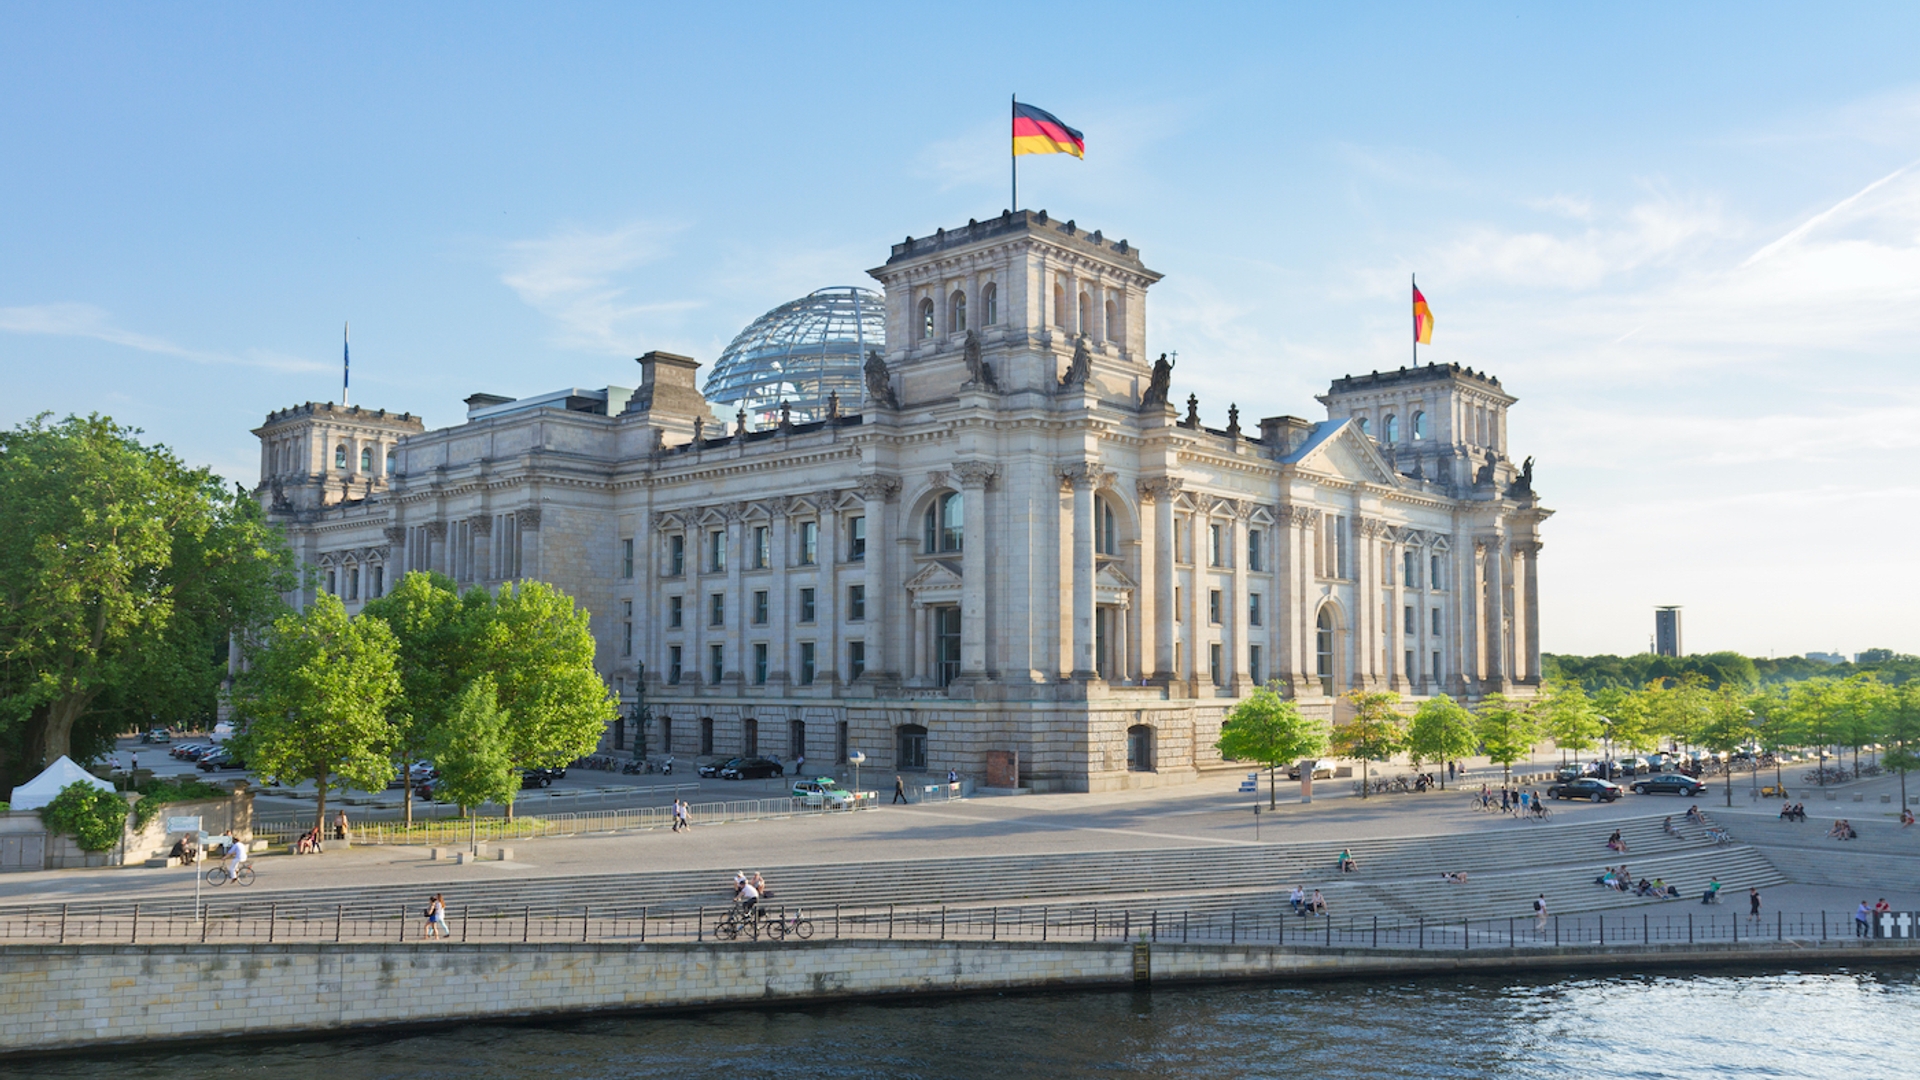 Rijksdaggebouw Berlijn